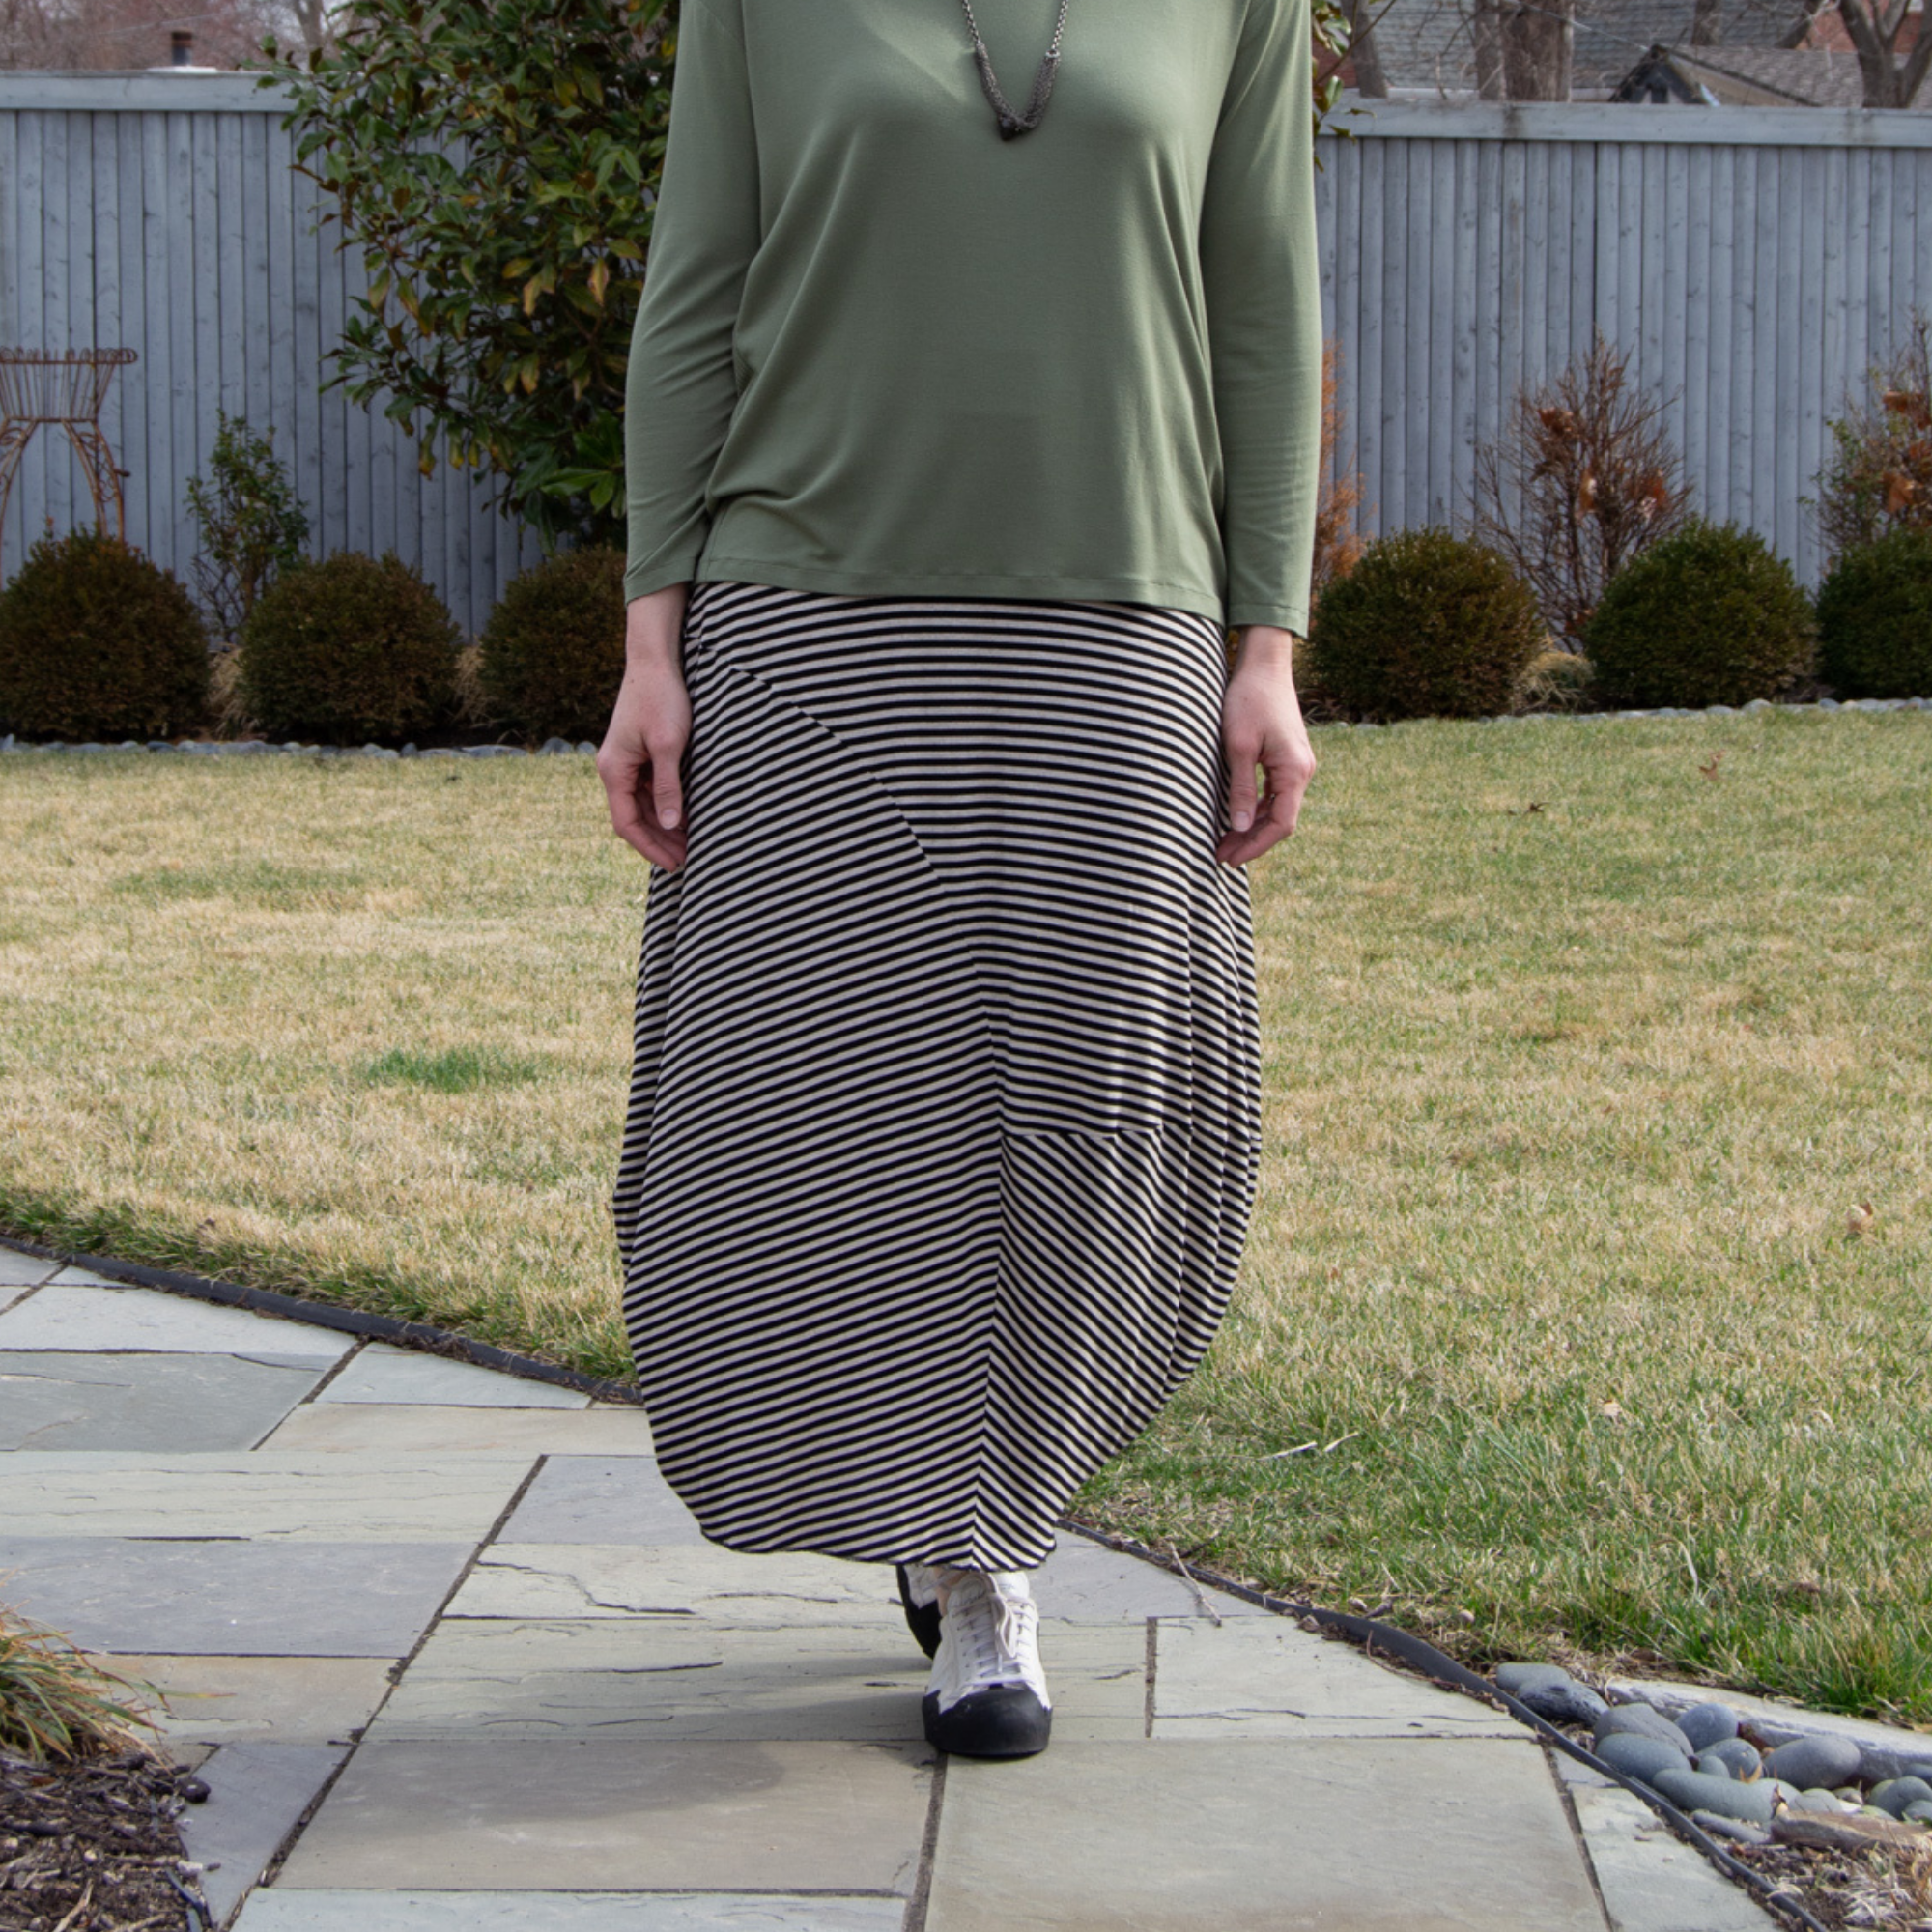 Edgewater Skirt Sew Confident! Online Workshop